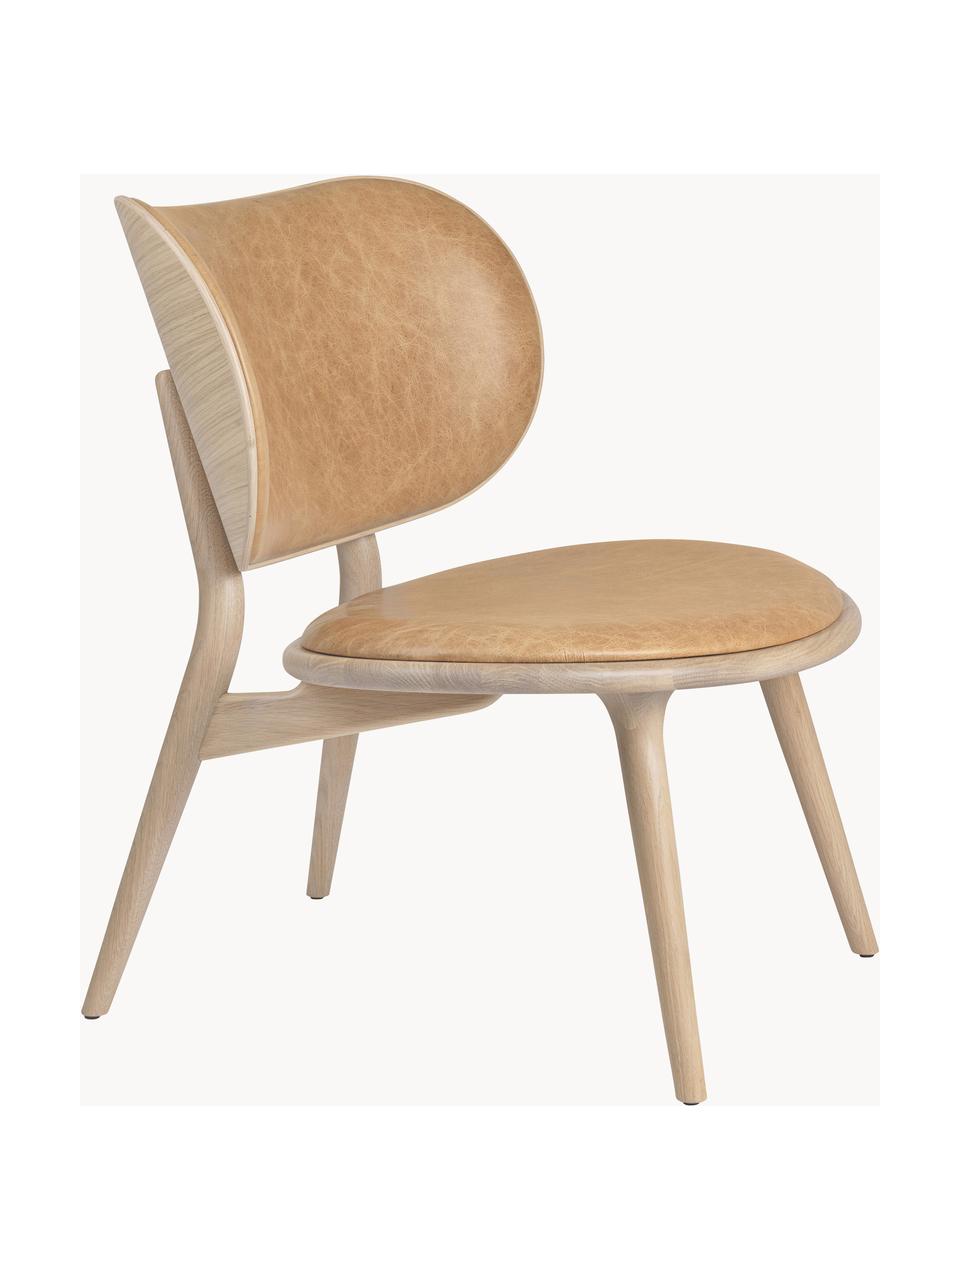 Kožená židle s dřevěnými nohami Rock, ručně vyrobená, Béžová, dubové dřevo, světlá, Š 65 cm, H 69 cm